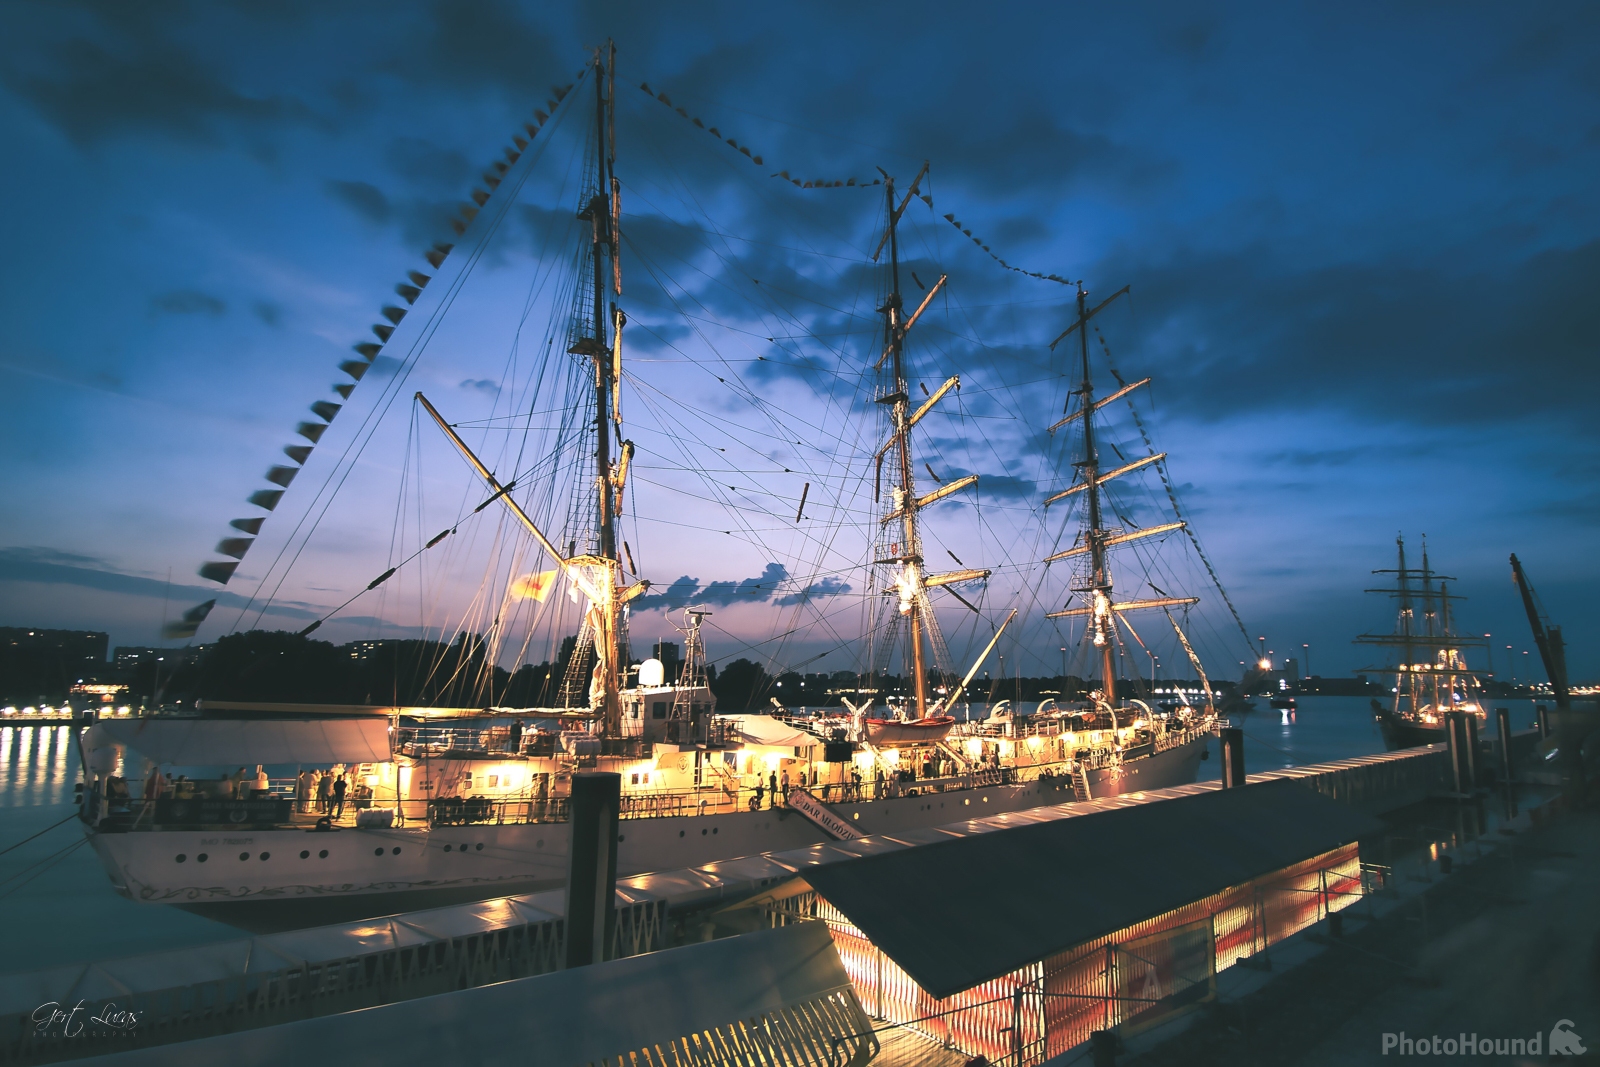 Image of Antwerp Tall Ship Race by Gert Lucas